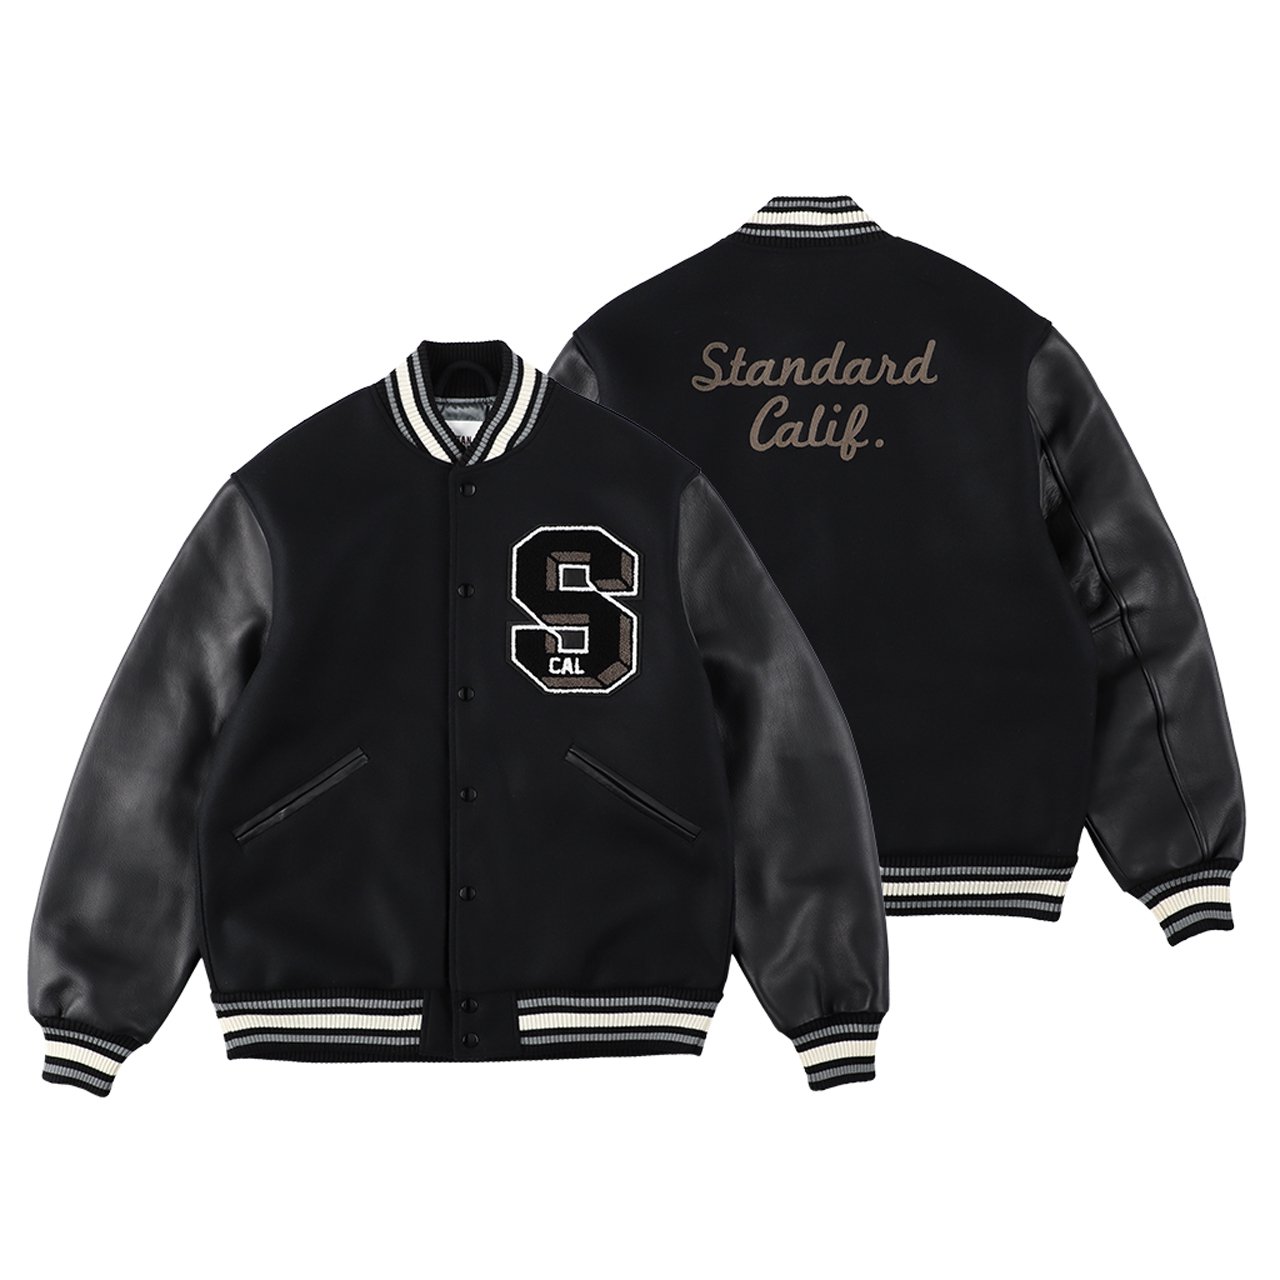 STANDARD CALIFORNIA (スタンダード カリフォルニア)23fw/秋冬
Varsity Jacket Black
刺繡あり
